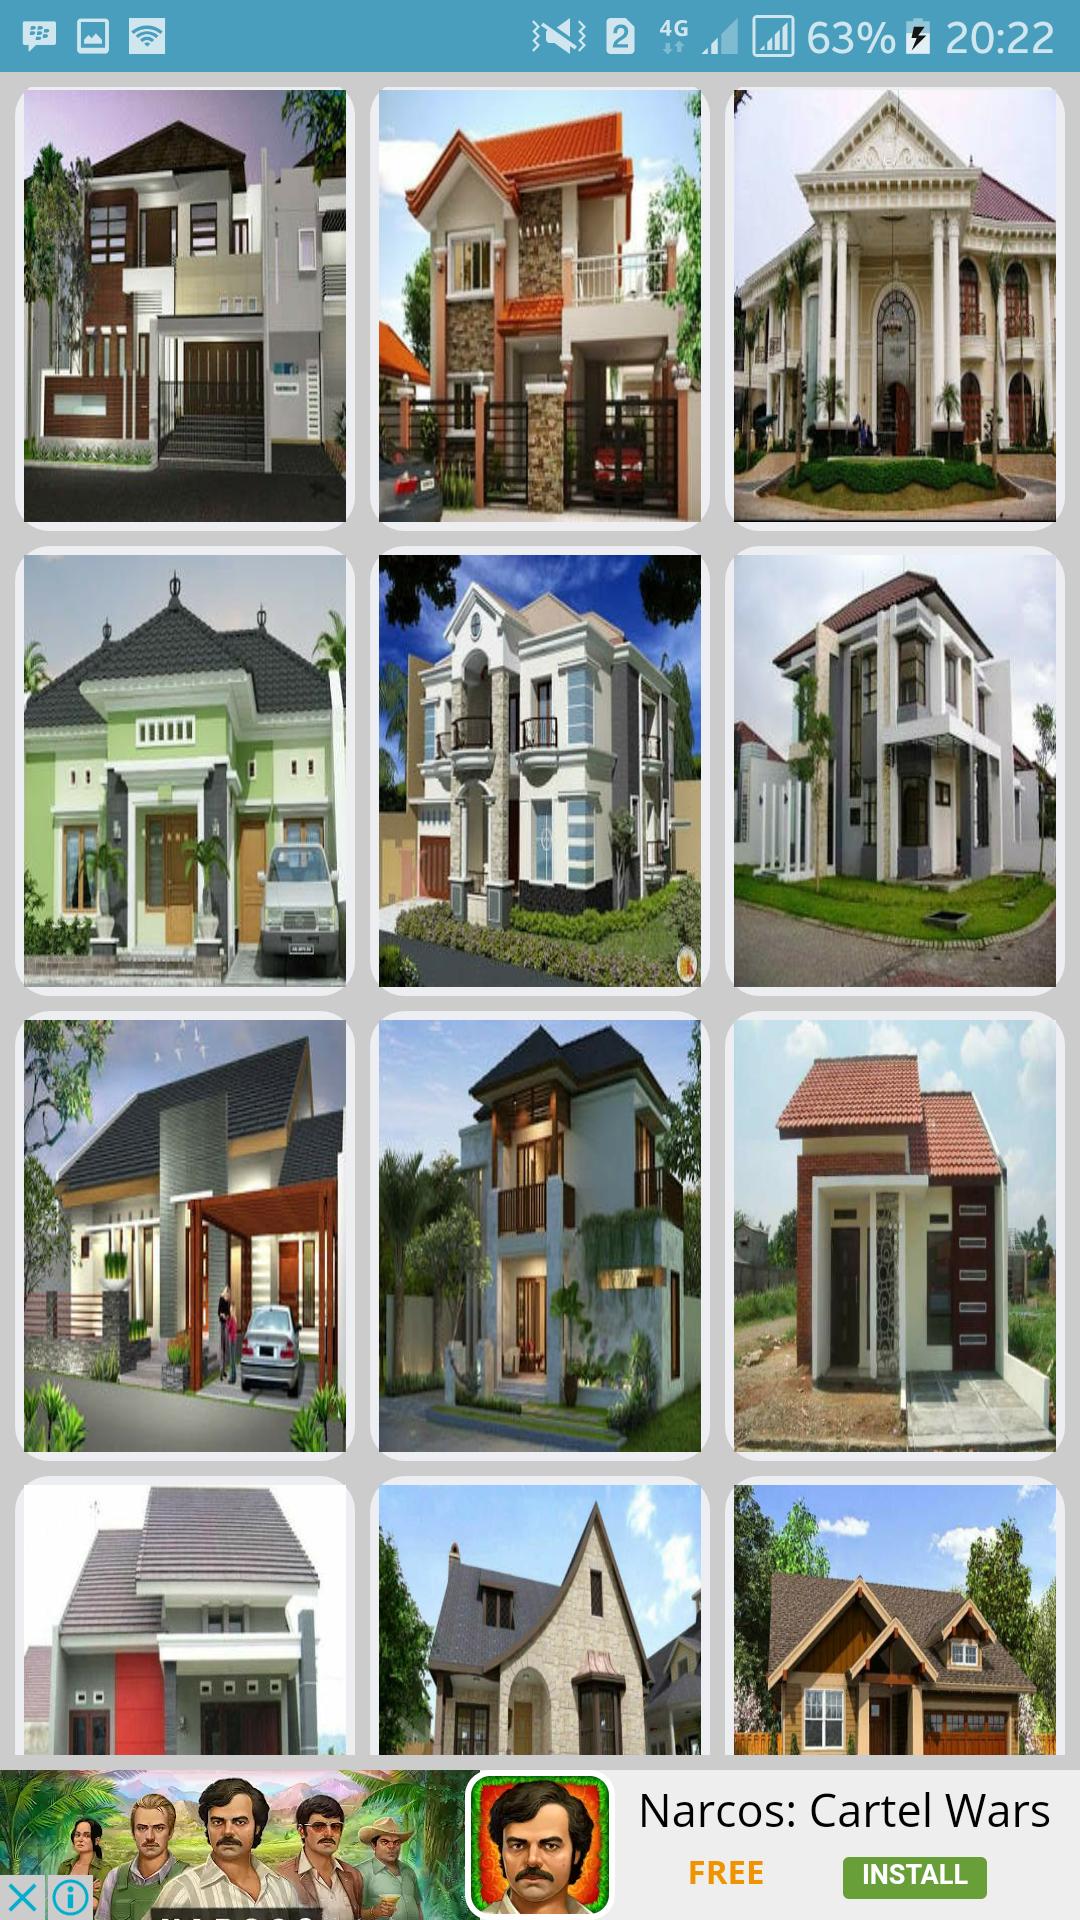 Desain Rumah Idaman Minimalis For Android APK Download